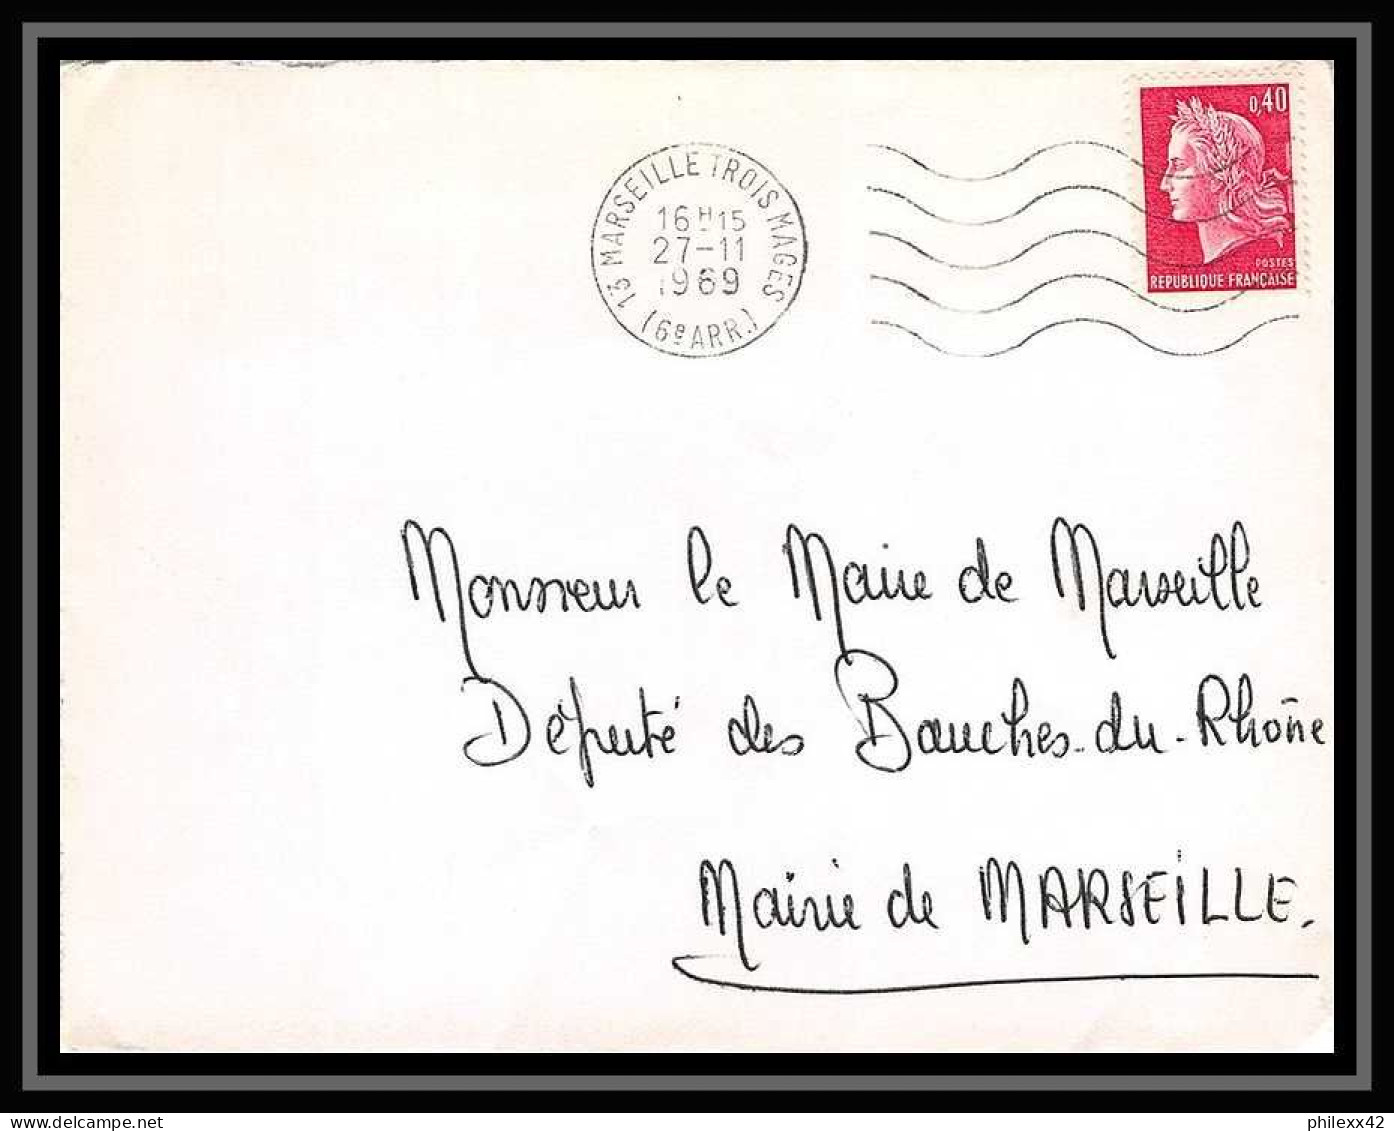 107925 lot de 10 lettres Bouches du rhone Marseille rue des trois mages